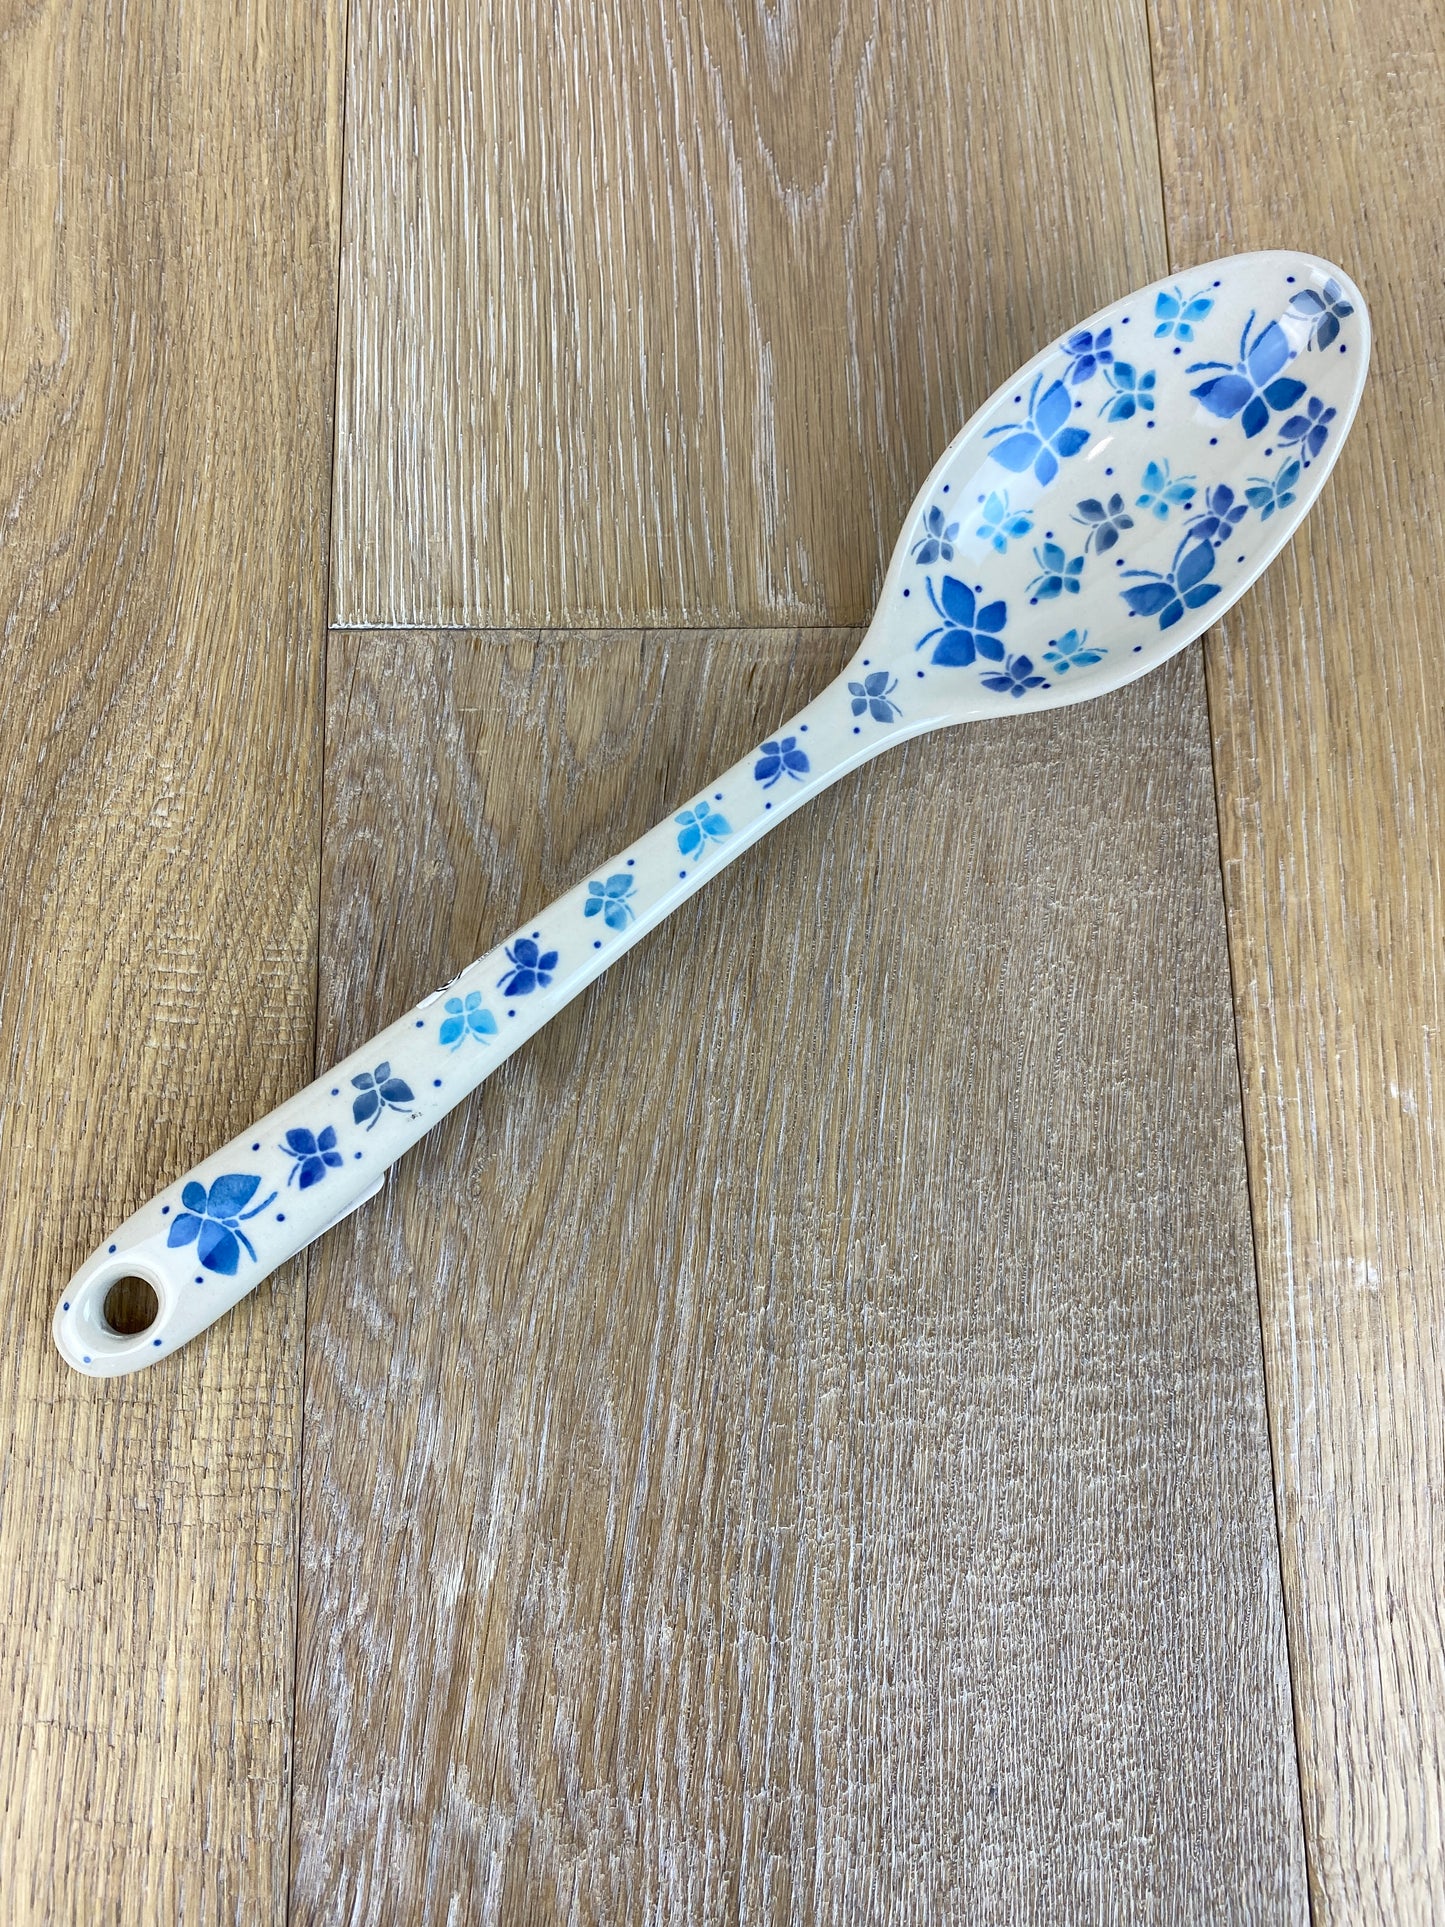 Serving Spoon - Shape 948 - Pattern 2380